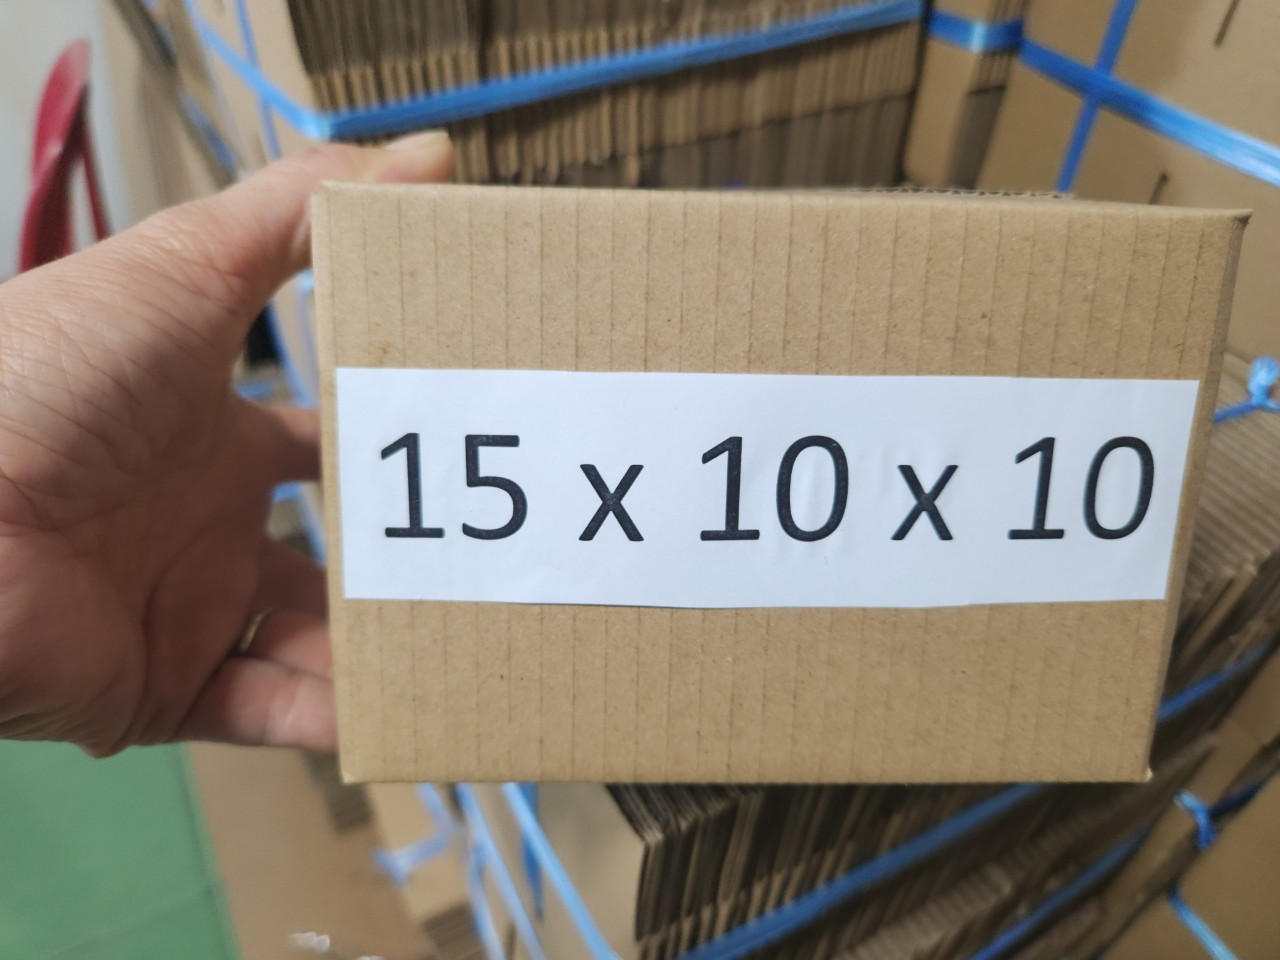 Combo 10 hộp carton 10x10x5